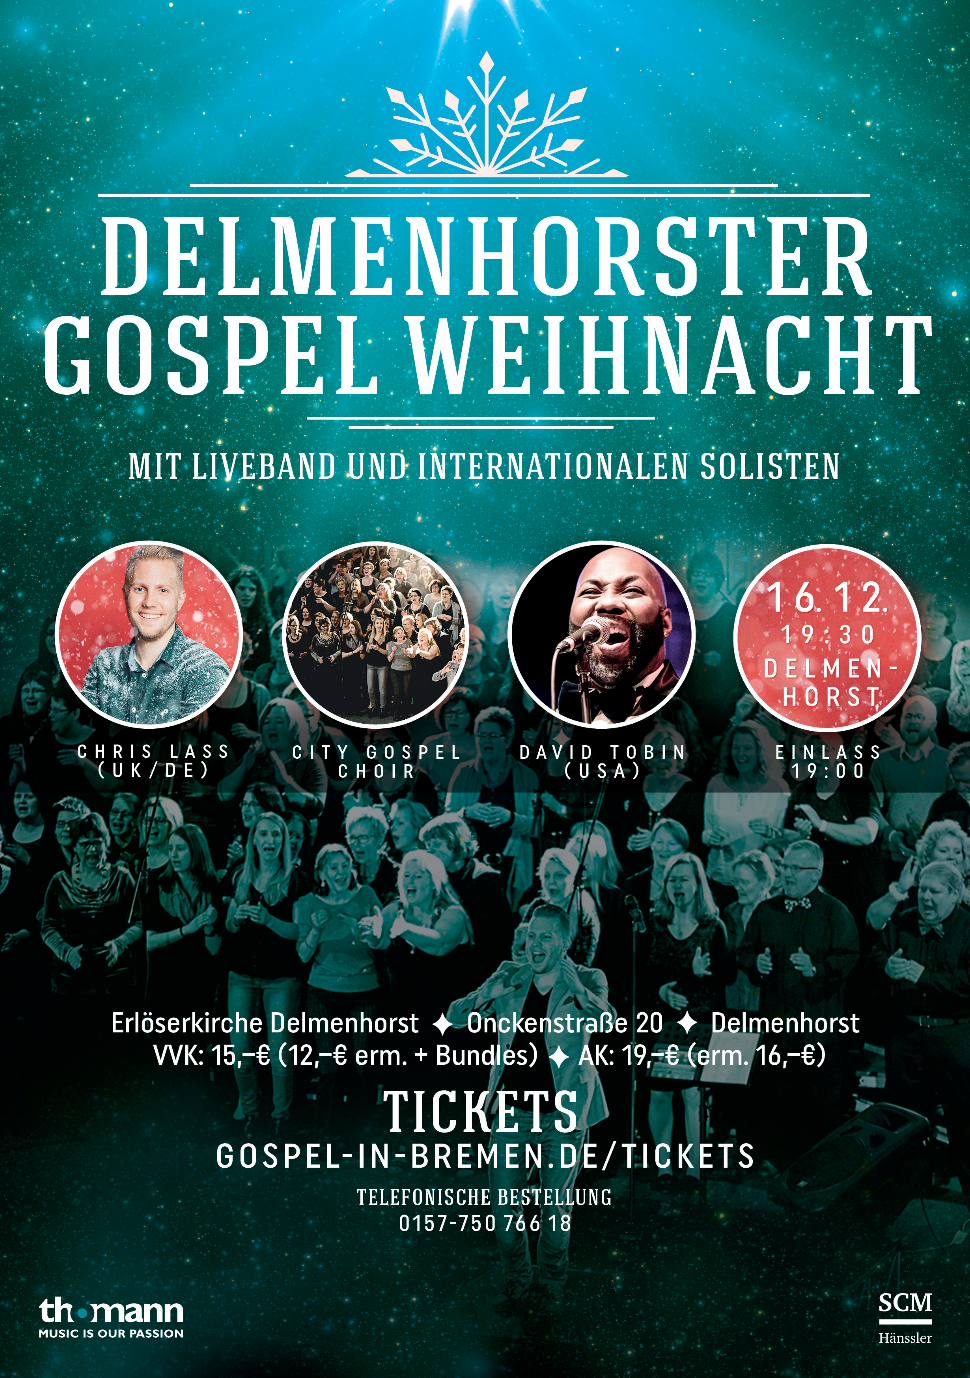 Delmenhorster Gospel Weihnacht 2018